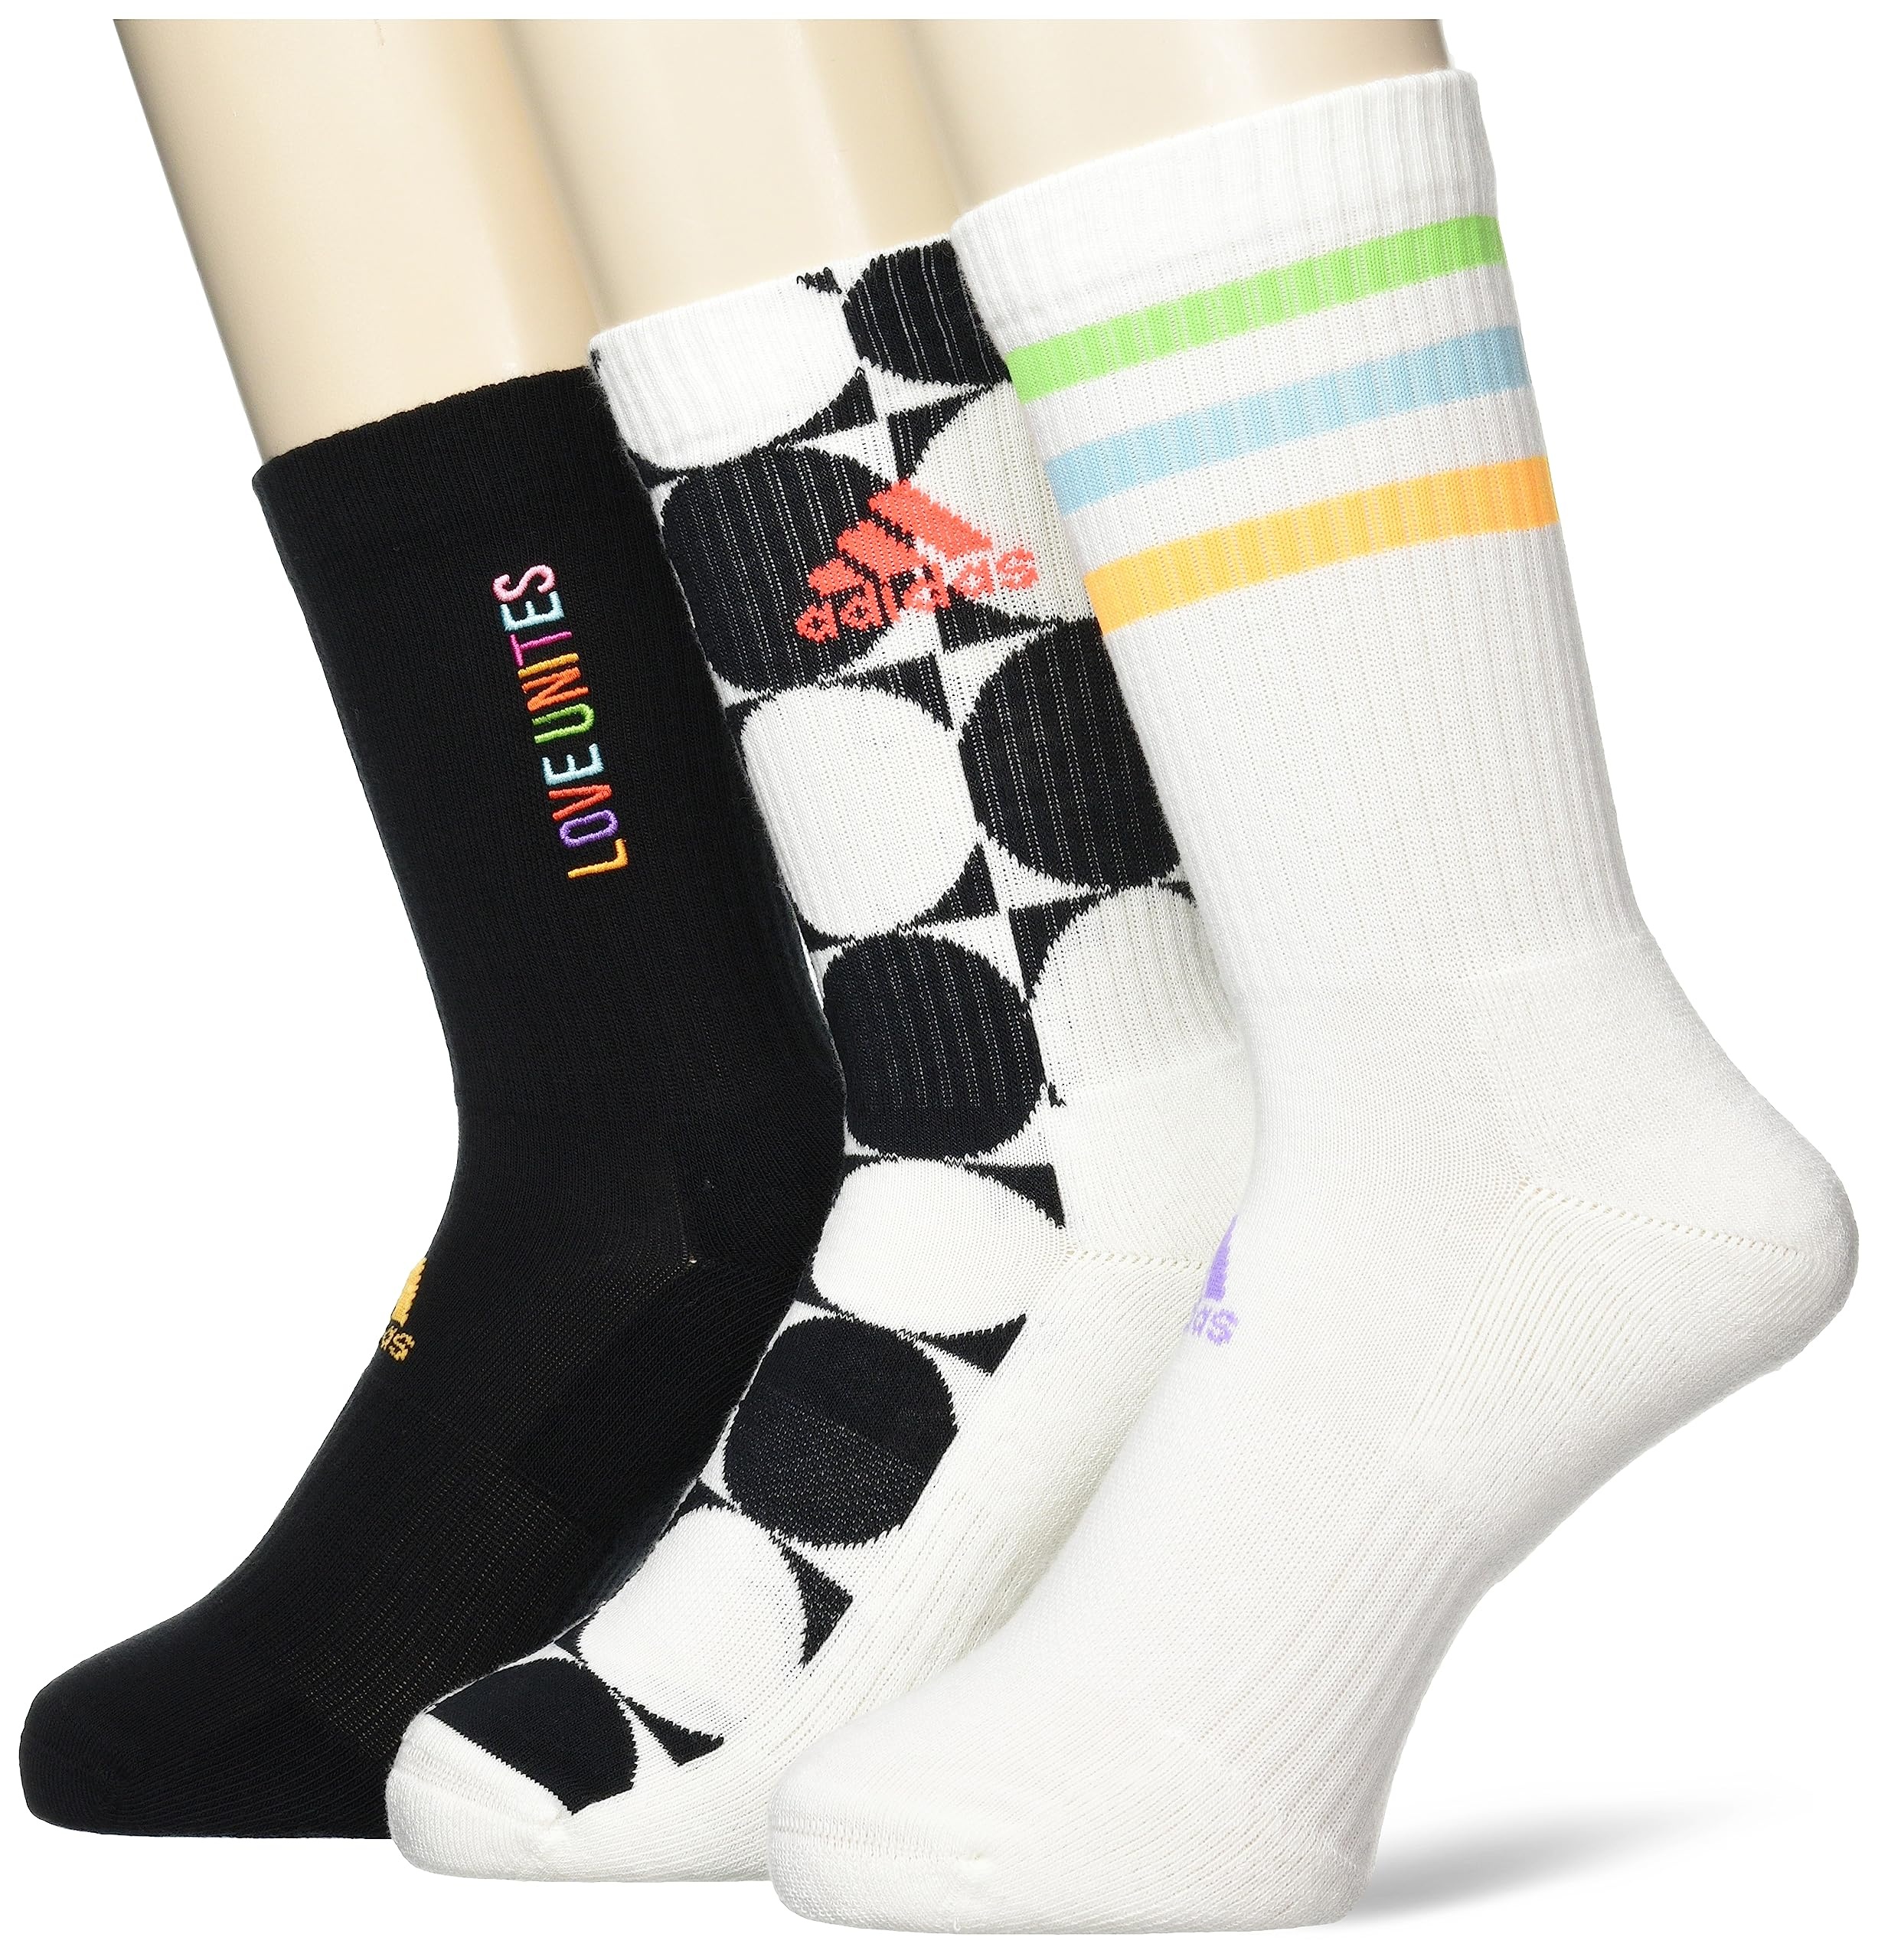 Adidas, Pride Love Unites, Socken (3 Paare), Aus Weiß/Schwarz/Mehrfarbig, L, Unisex-Adult